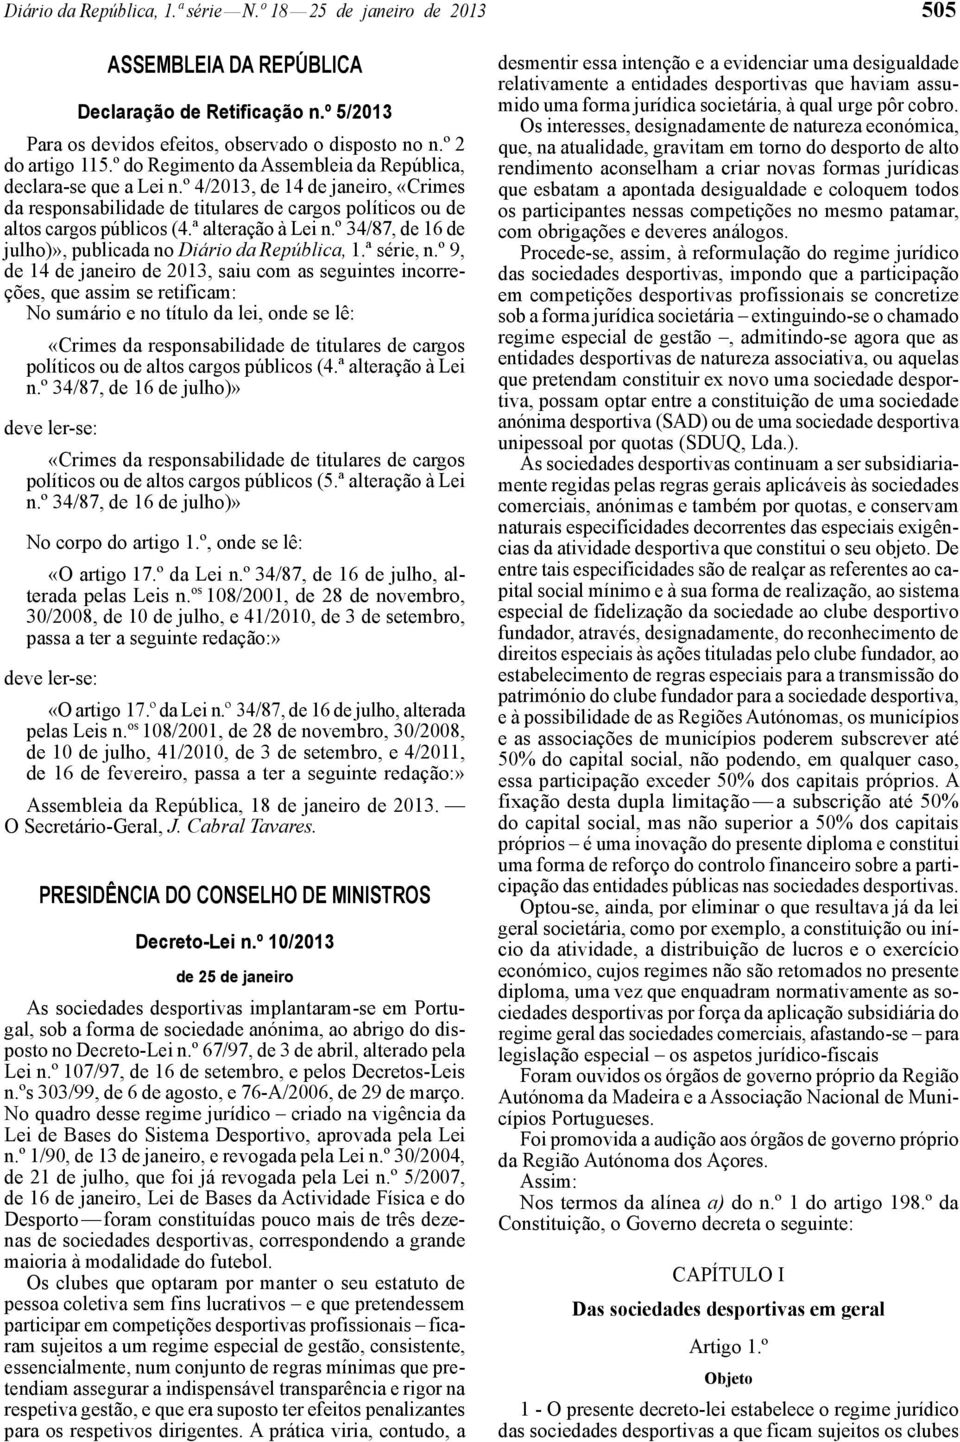 ª alteração à Lei n.º 34/87, de 16 de julho)», publicada no Diário da República, 1.ª série, n.